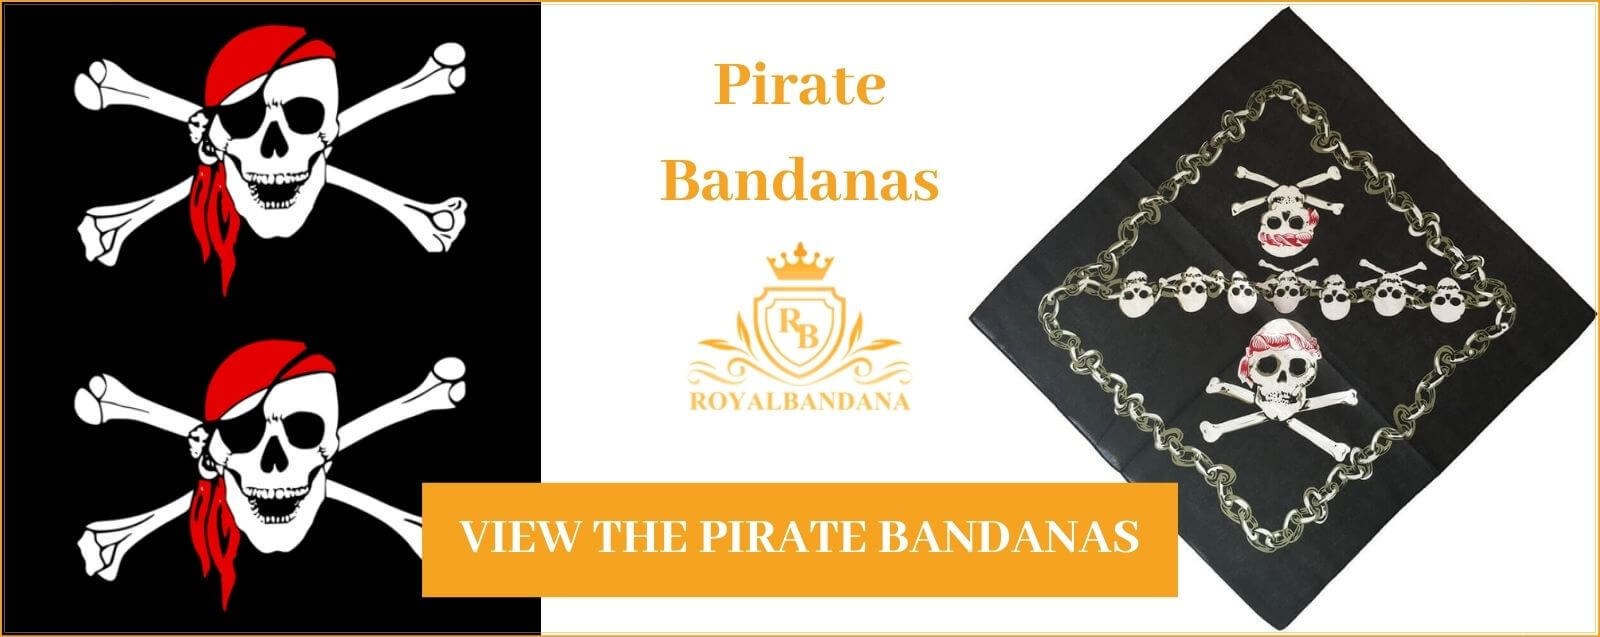 see pirate bandana royalbandana